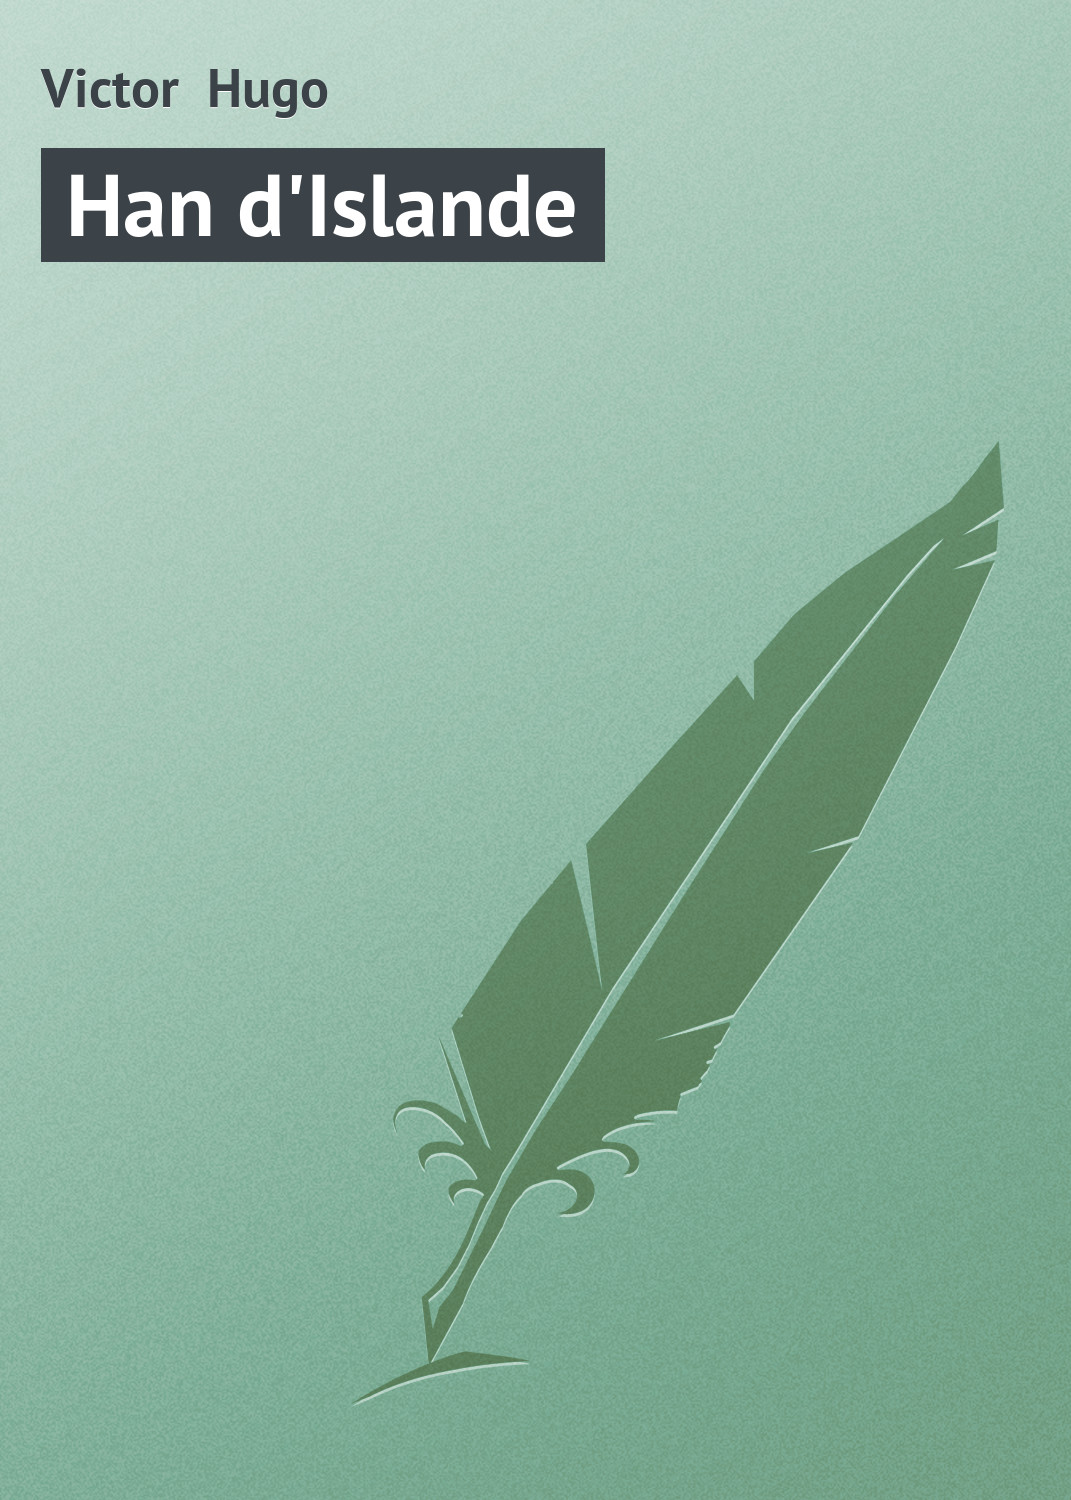 Книга Han d'Islande из серии , созданная Victor Hugo, может относится к жанру Зарубежная старинная литература, Зарубежная классика. Стоимость электронной книги Han d'Islande с идентификатором 21106046 составляет 5.99 руб.